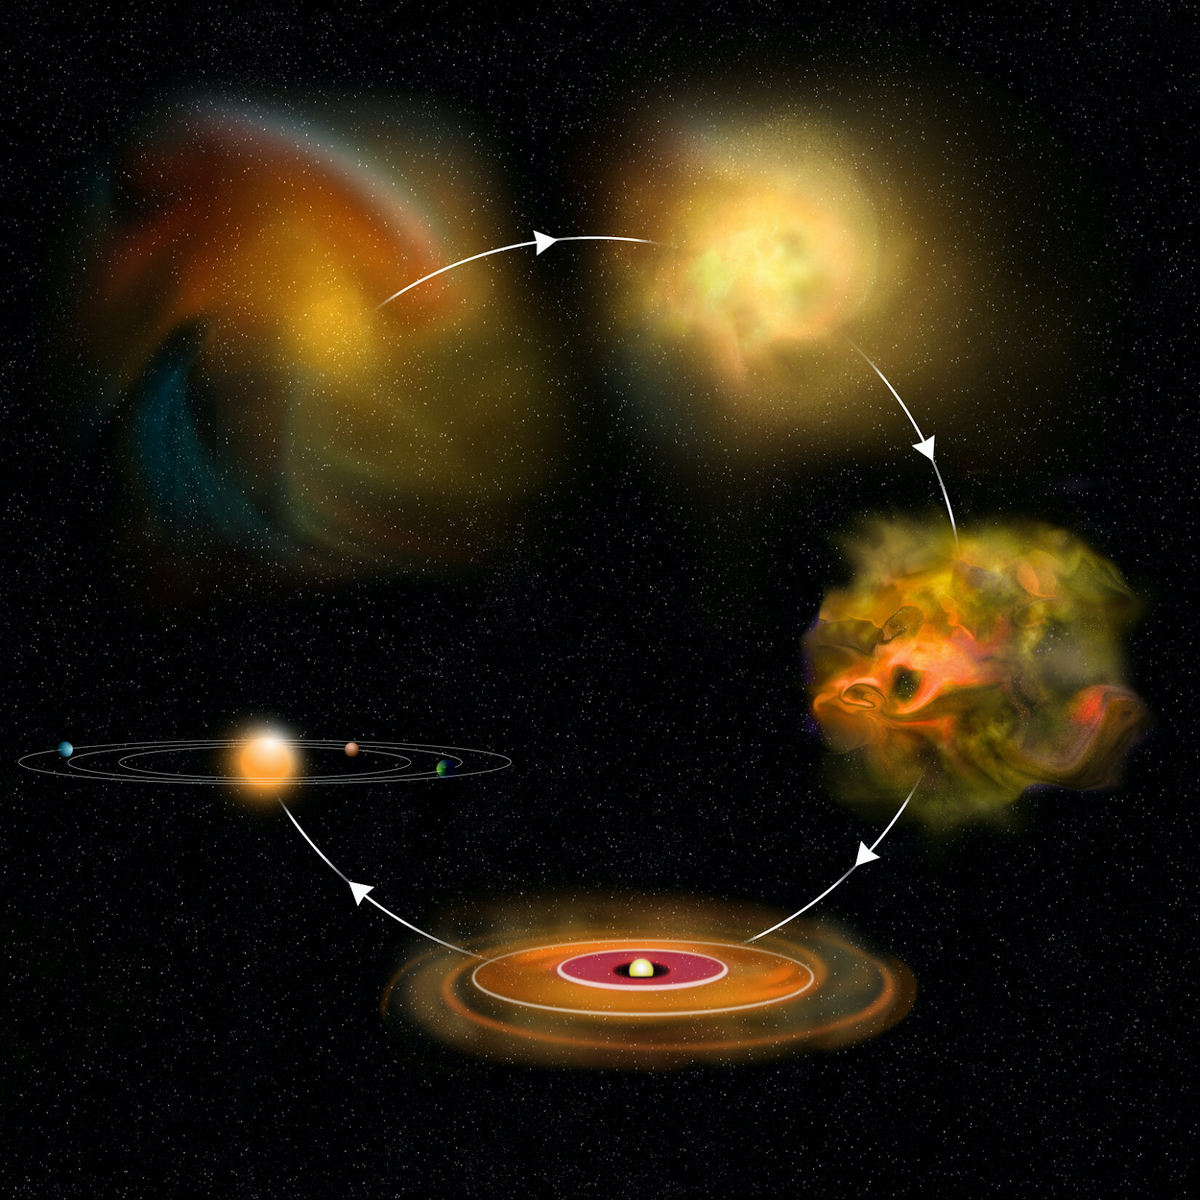 Формирование звезды с планетной системой из газопылевого облака.